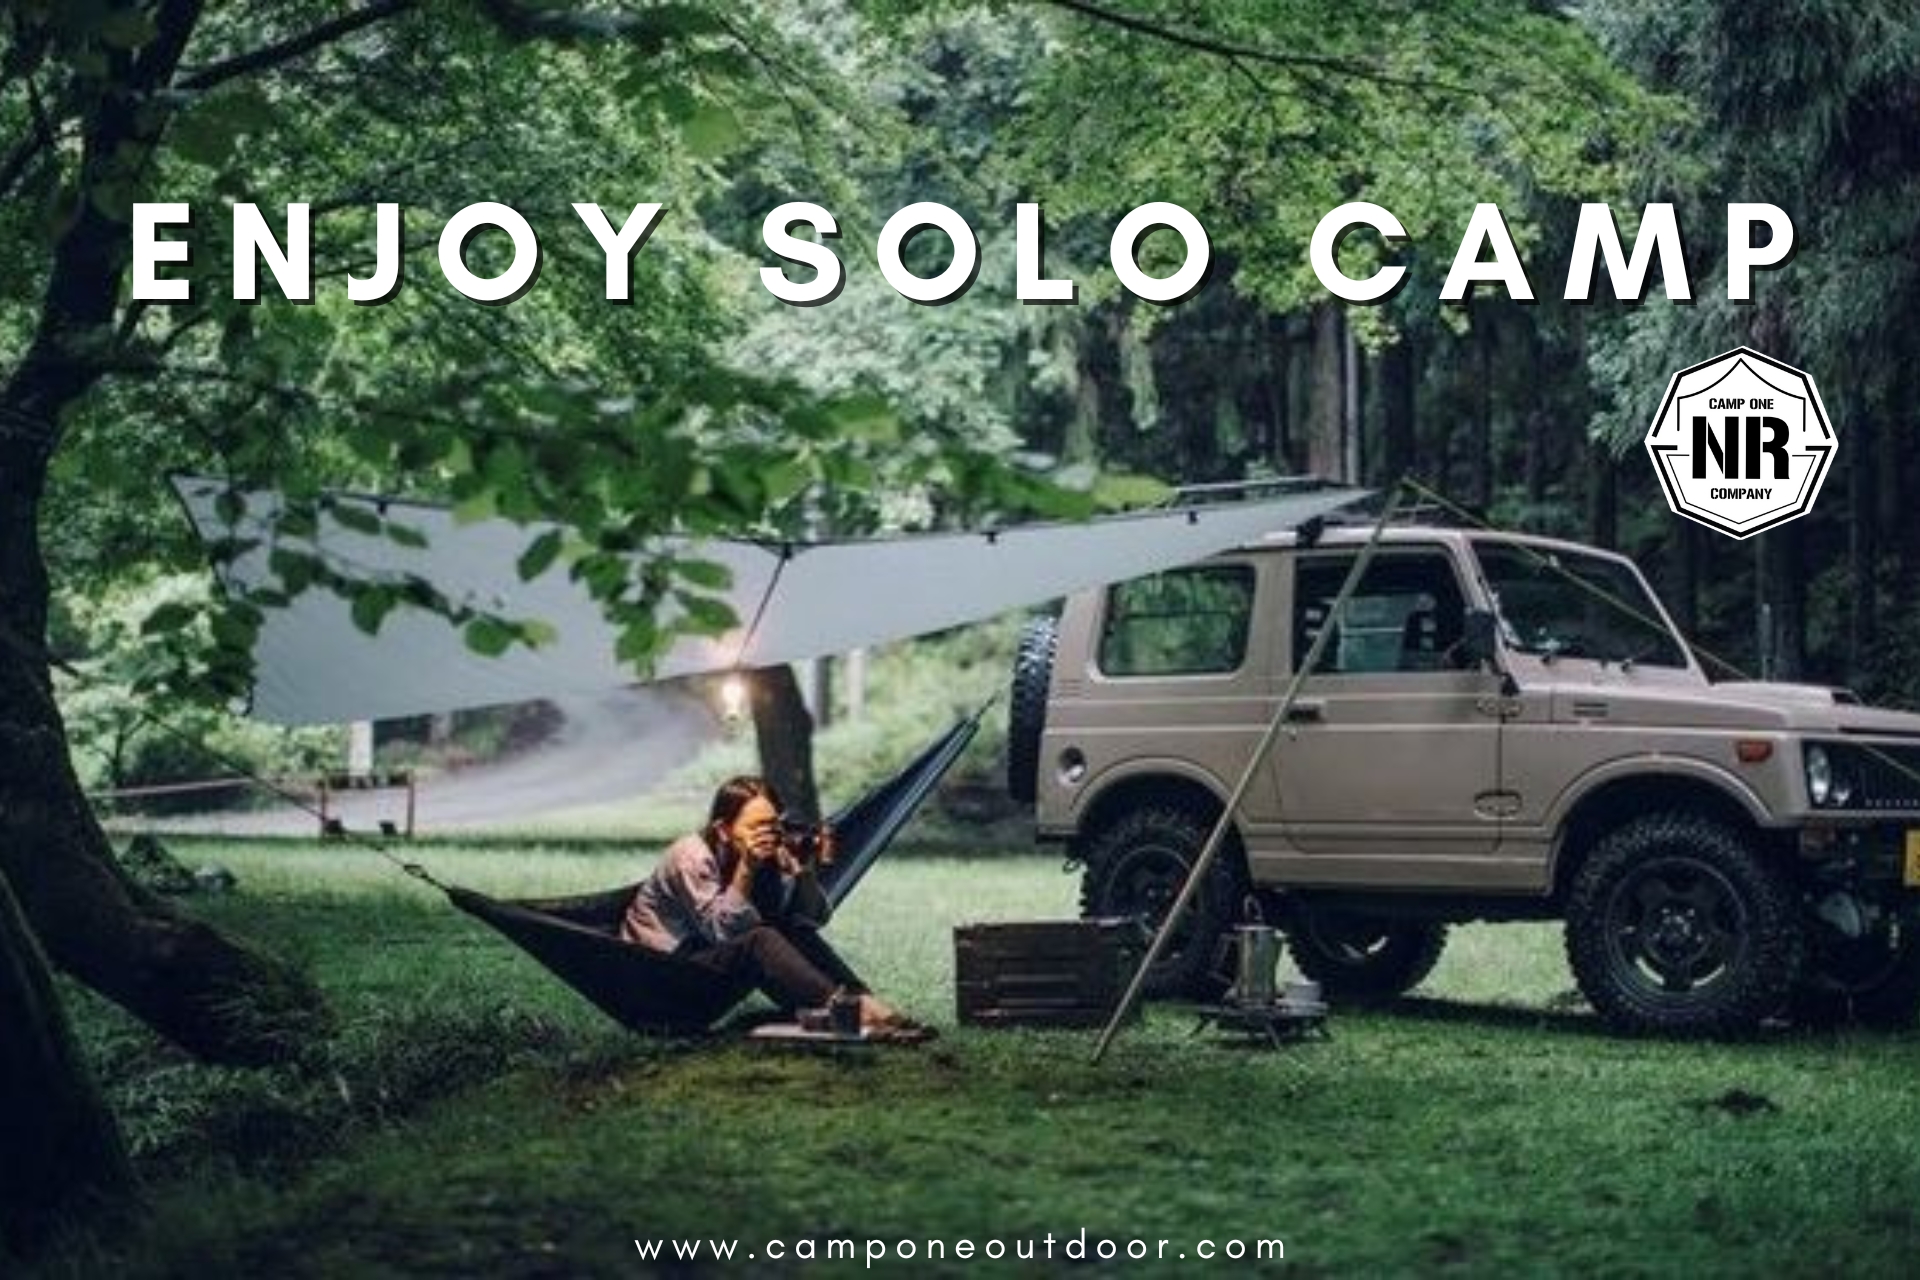 Enjoy Solo Camp : ข้อคิดและประโยชน์ พร้อมเทคนิคการแคมป์ปิ้งคนเดียวอย่างปลอดภัย